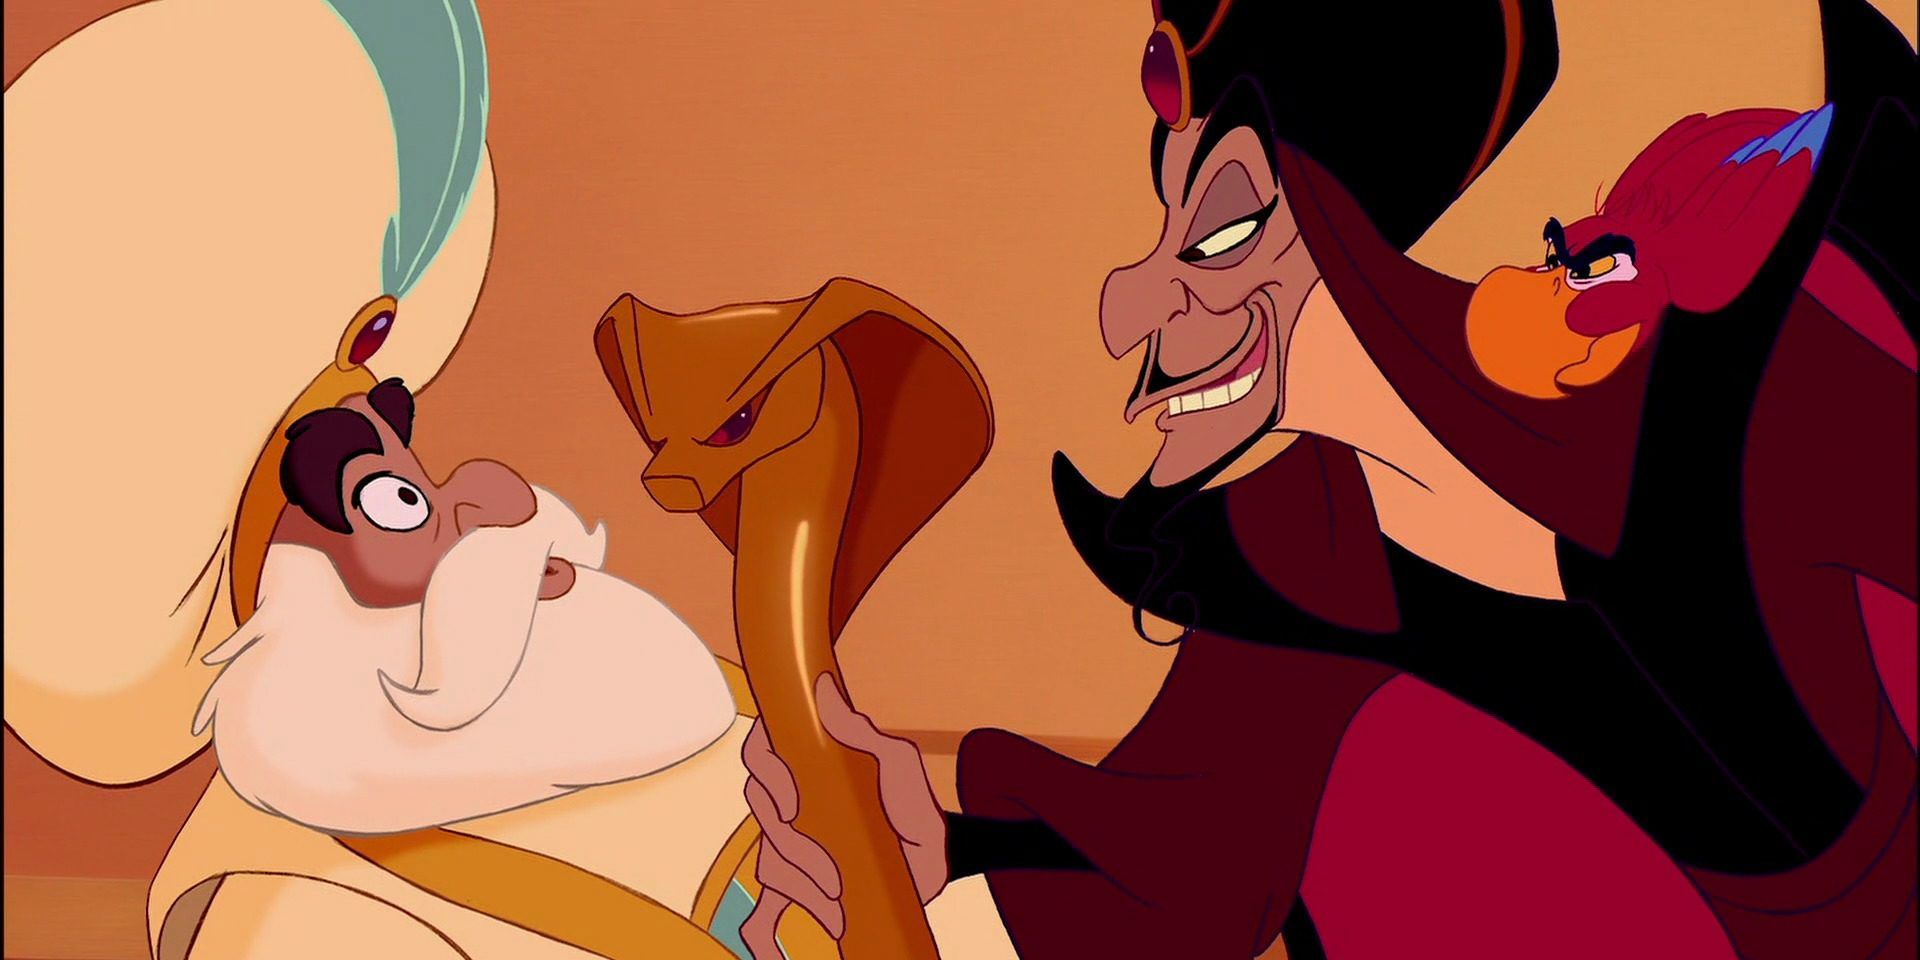 Disney 10 Things That Don’t Make Sense About Aladdin (1992)